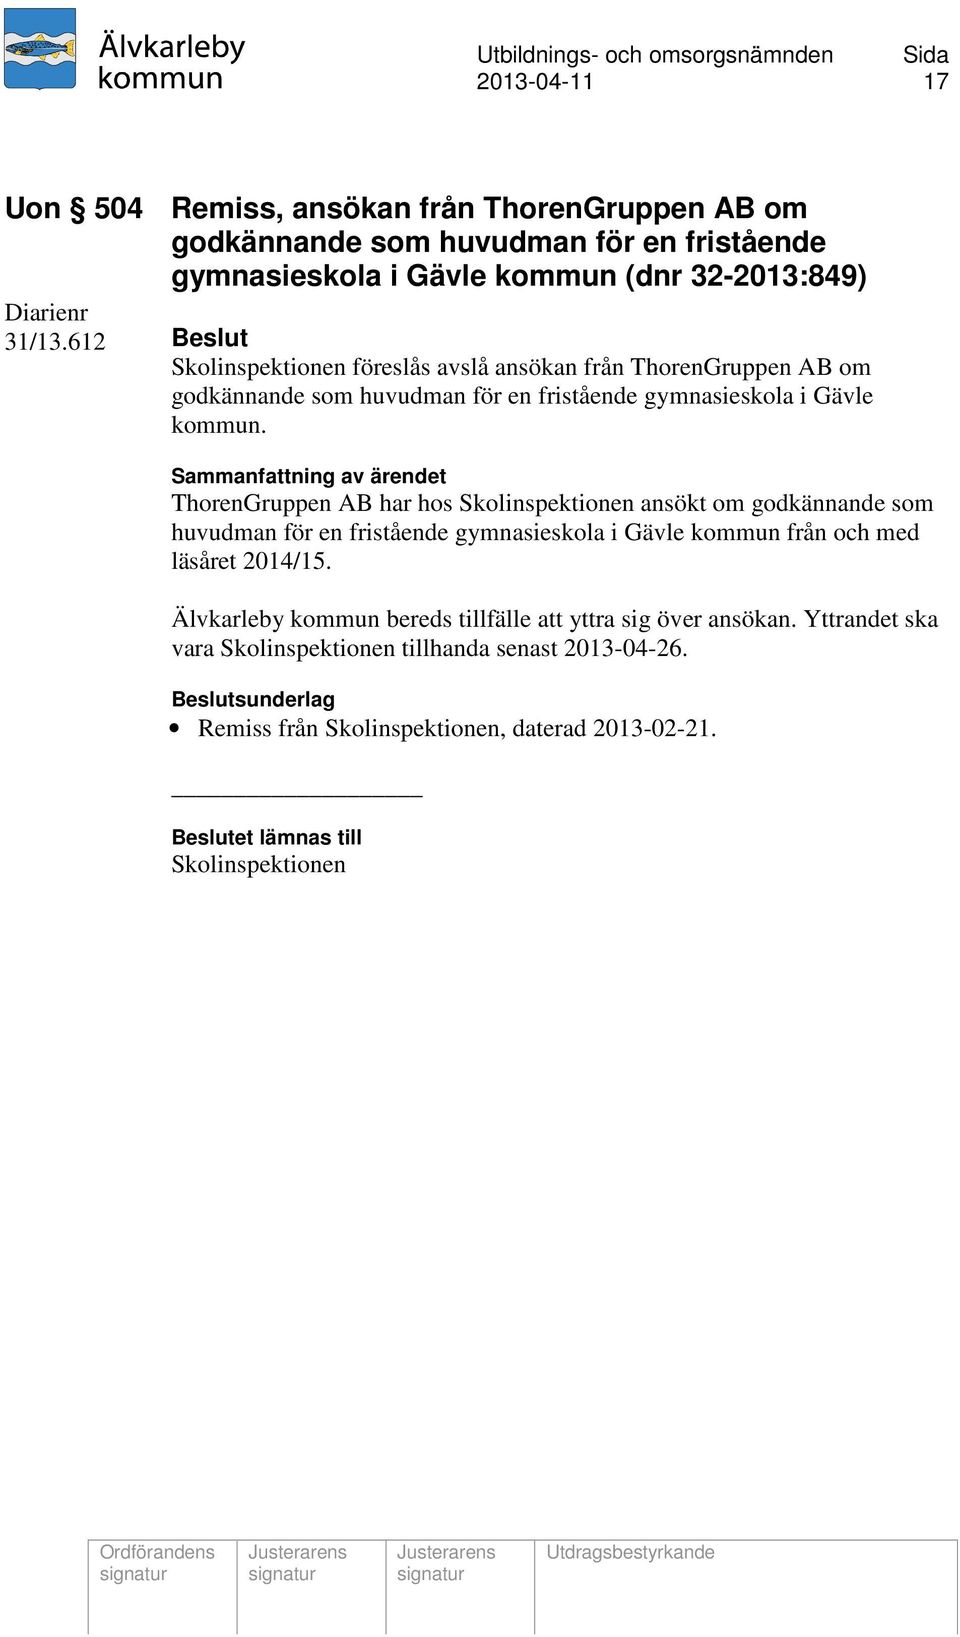 ThorenGruppen AB har hos Skolinspektionen ansökt om godkännande som huvudman för en fristående gymnasieskola i Gävle kommun från och med läsåret 2014/15.